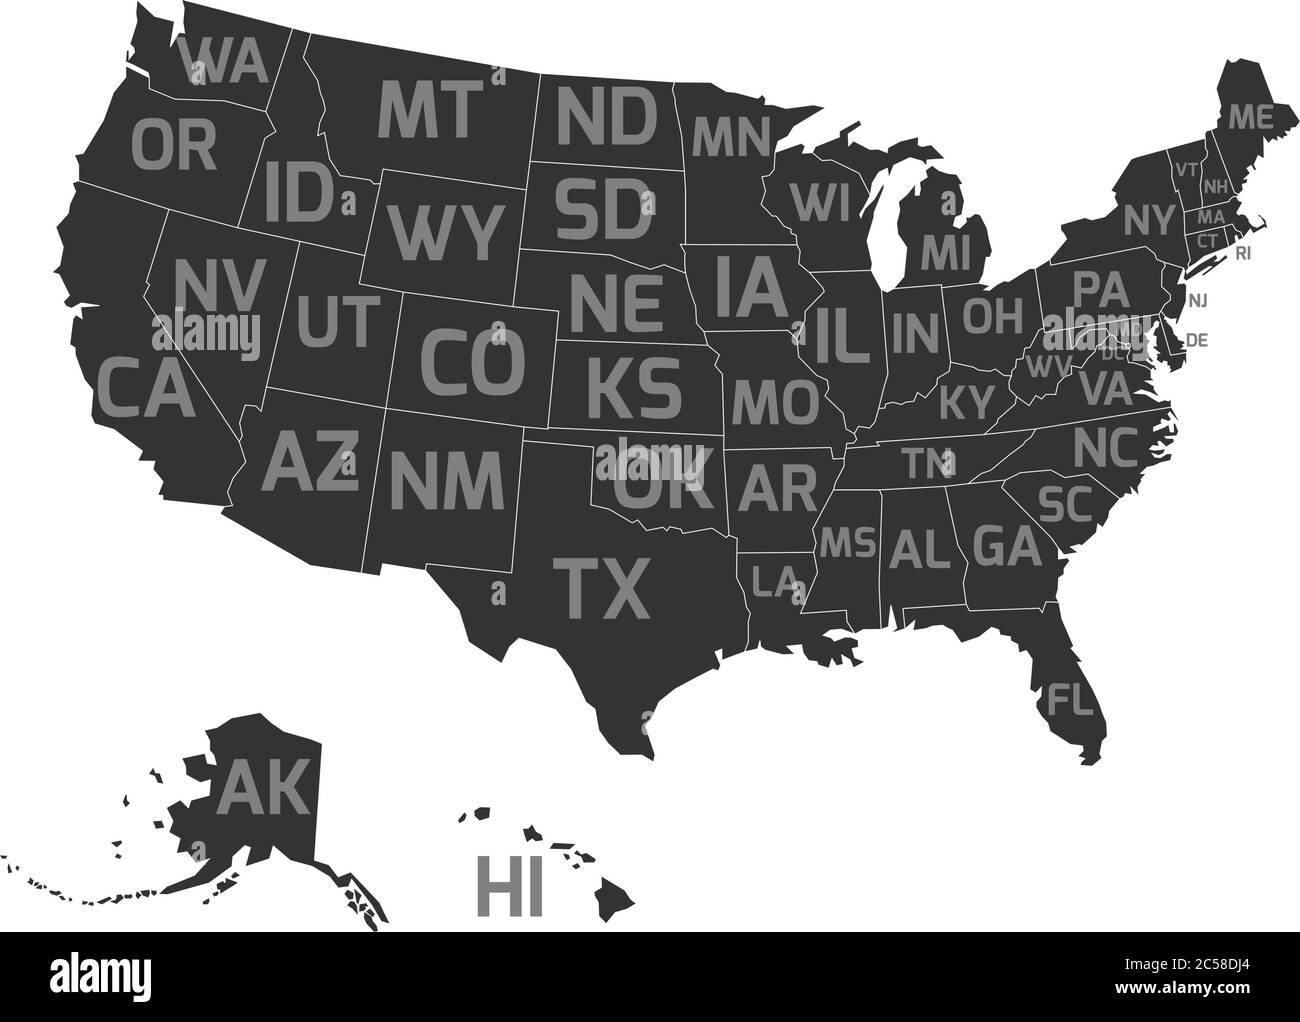 Karte der Vereinigten Staaten von Amerika, aka USA, mit US-Bundesstaaten Abkürzung Postleitzahlen. Flache, vereinfachte dunkelgraue Vektorkarte mit hellgrauen Beschriftungen auf weißem Hintergrund. Stock Vektor